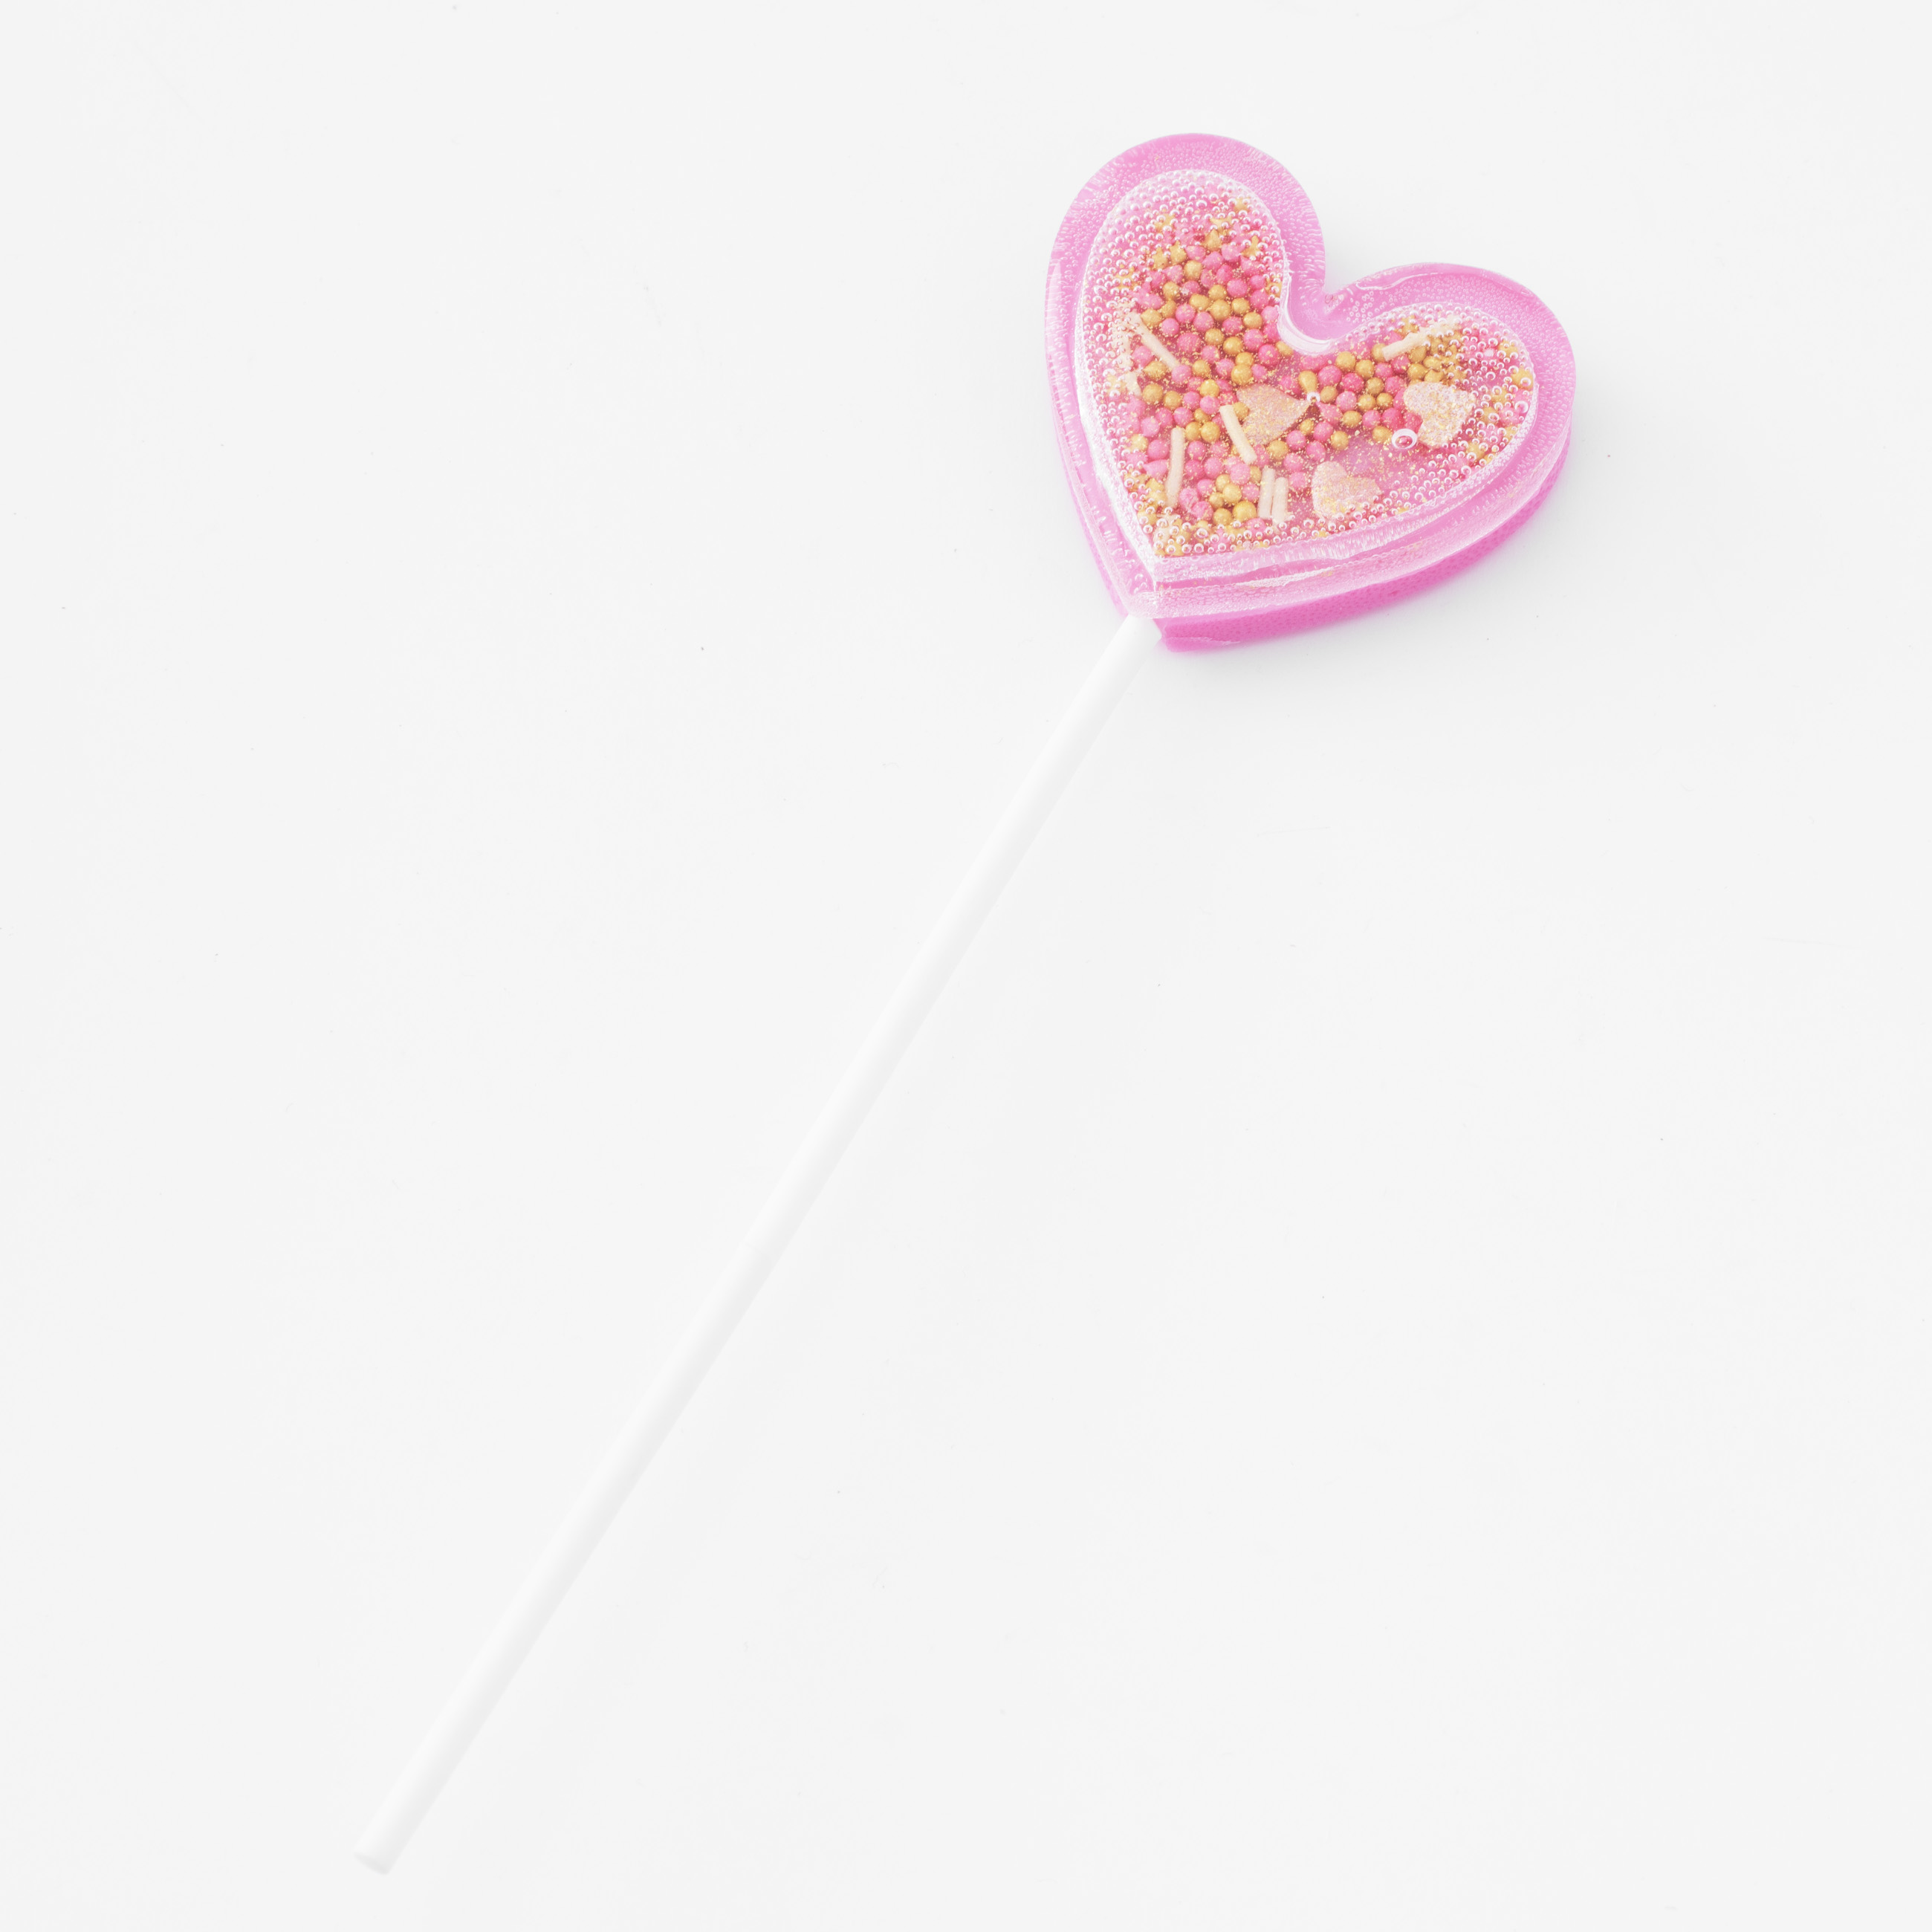 Леденец, 30 гр, погремушка, на палочке, изомальт, розовый, Сердце, Heart изображение № 2